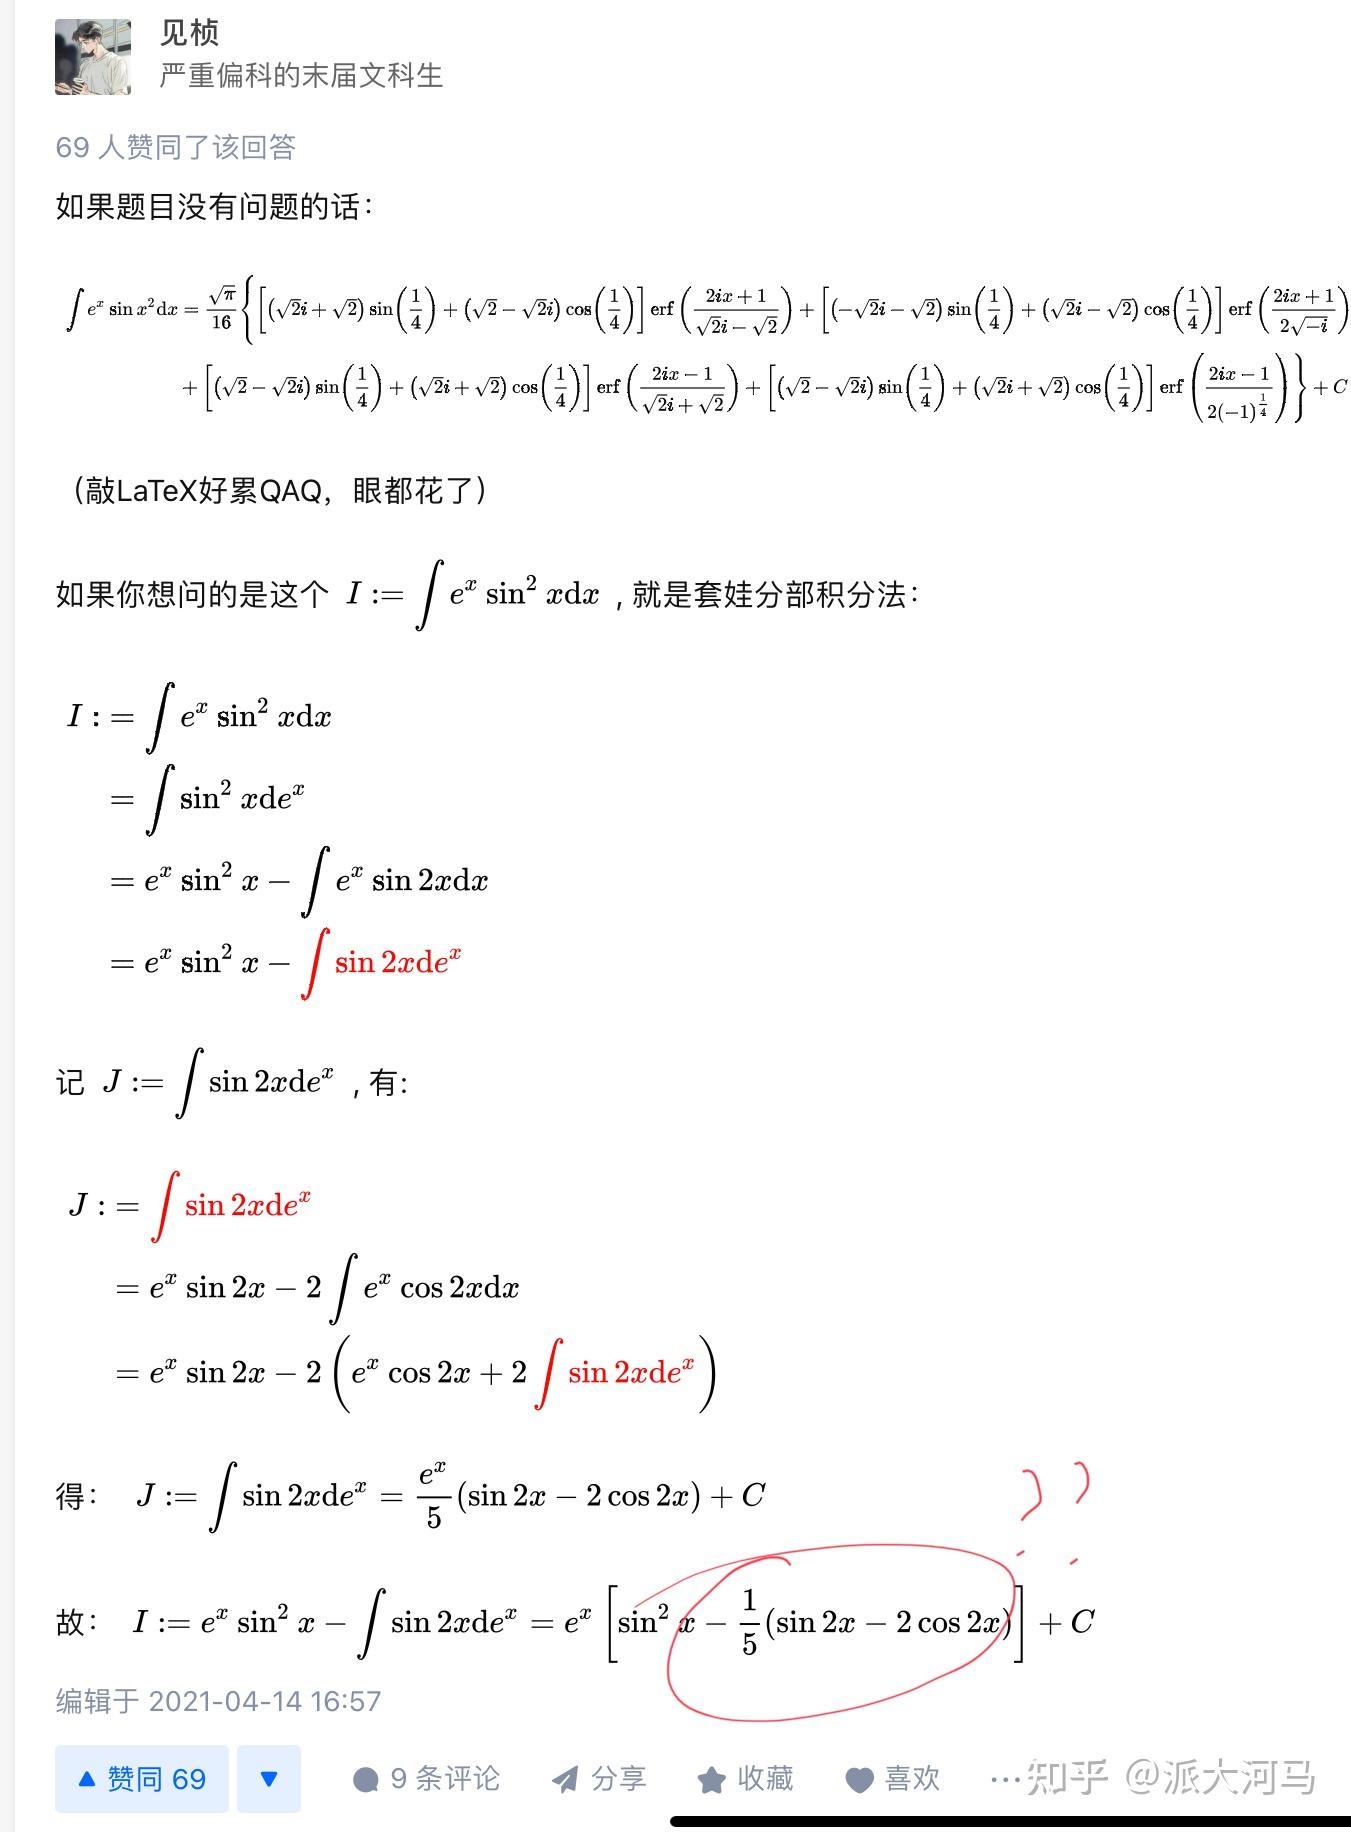 e^x*sinx^2的不定积分怎么求? 